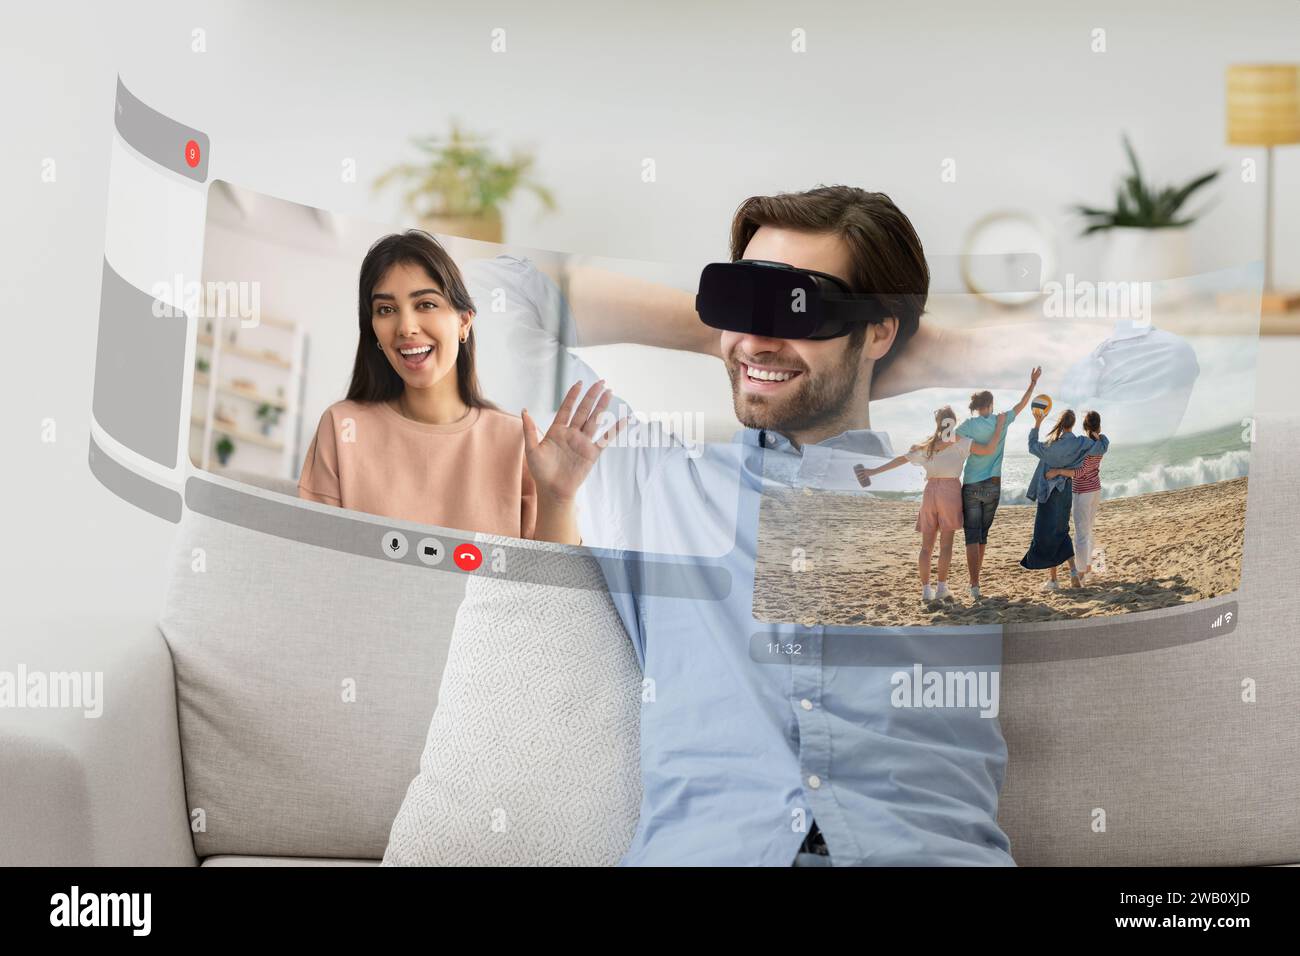 Ein junger Mann mit VR-Headset tritt in den virtuellen Raum ein und verbindet sich mit seiner Freundin durch Videogespräche zu Hause Stockfoto